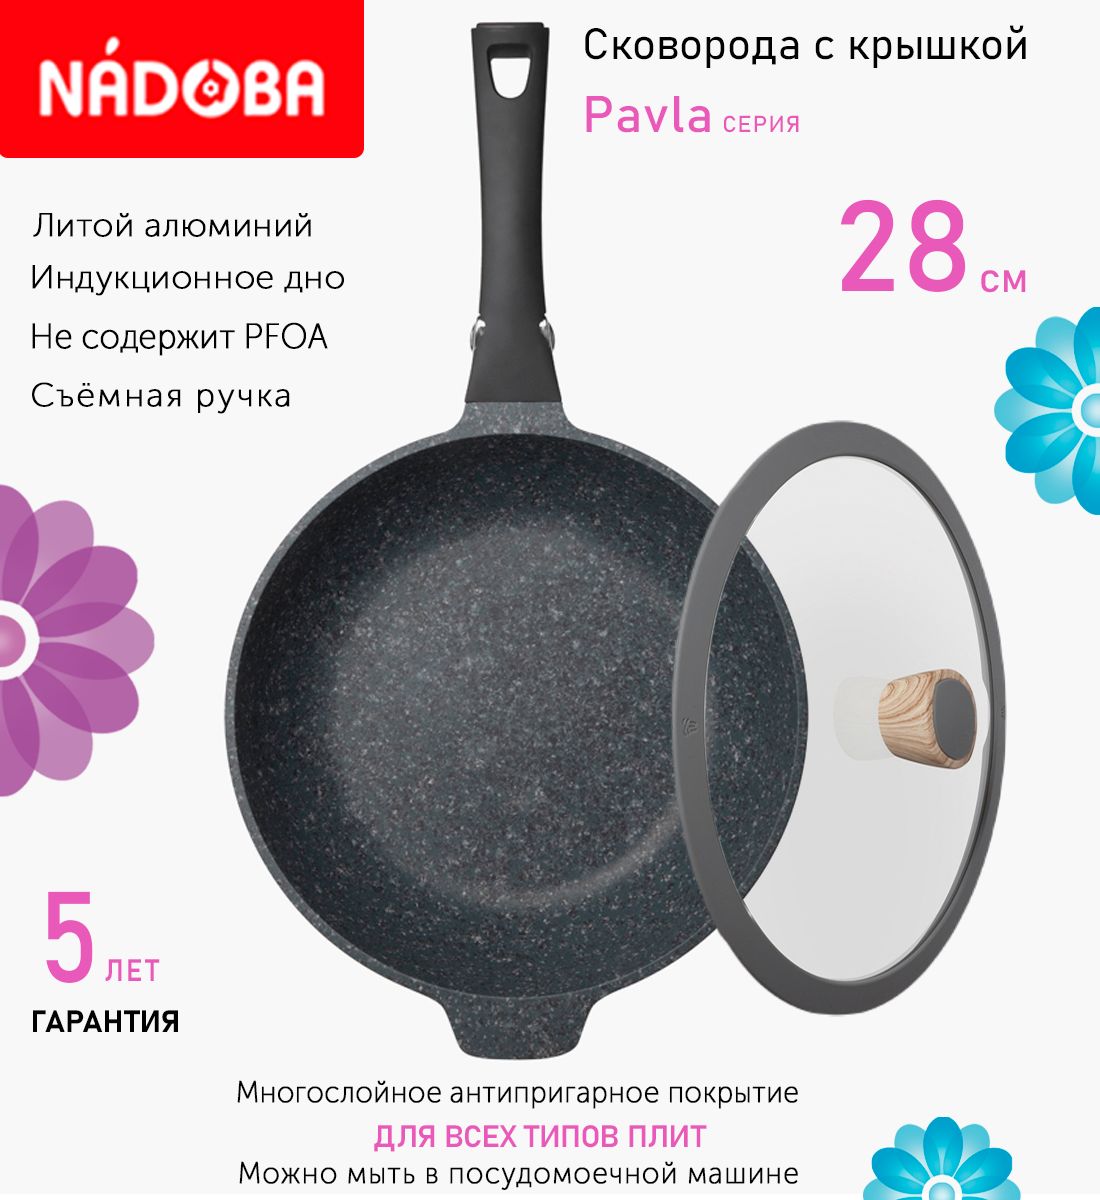 Сковорода глубокая с крышкой NADOBA 28 см серия Pavla